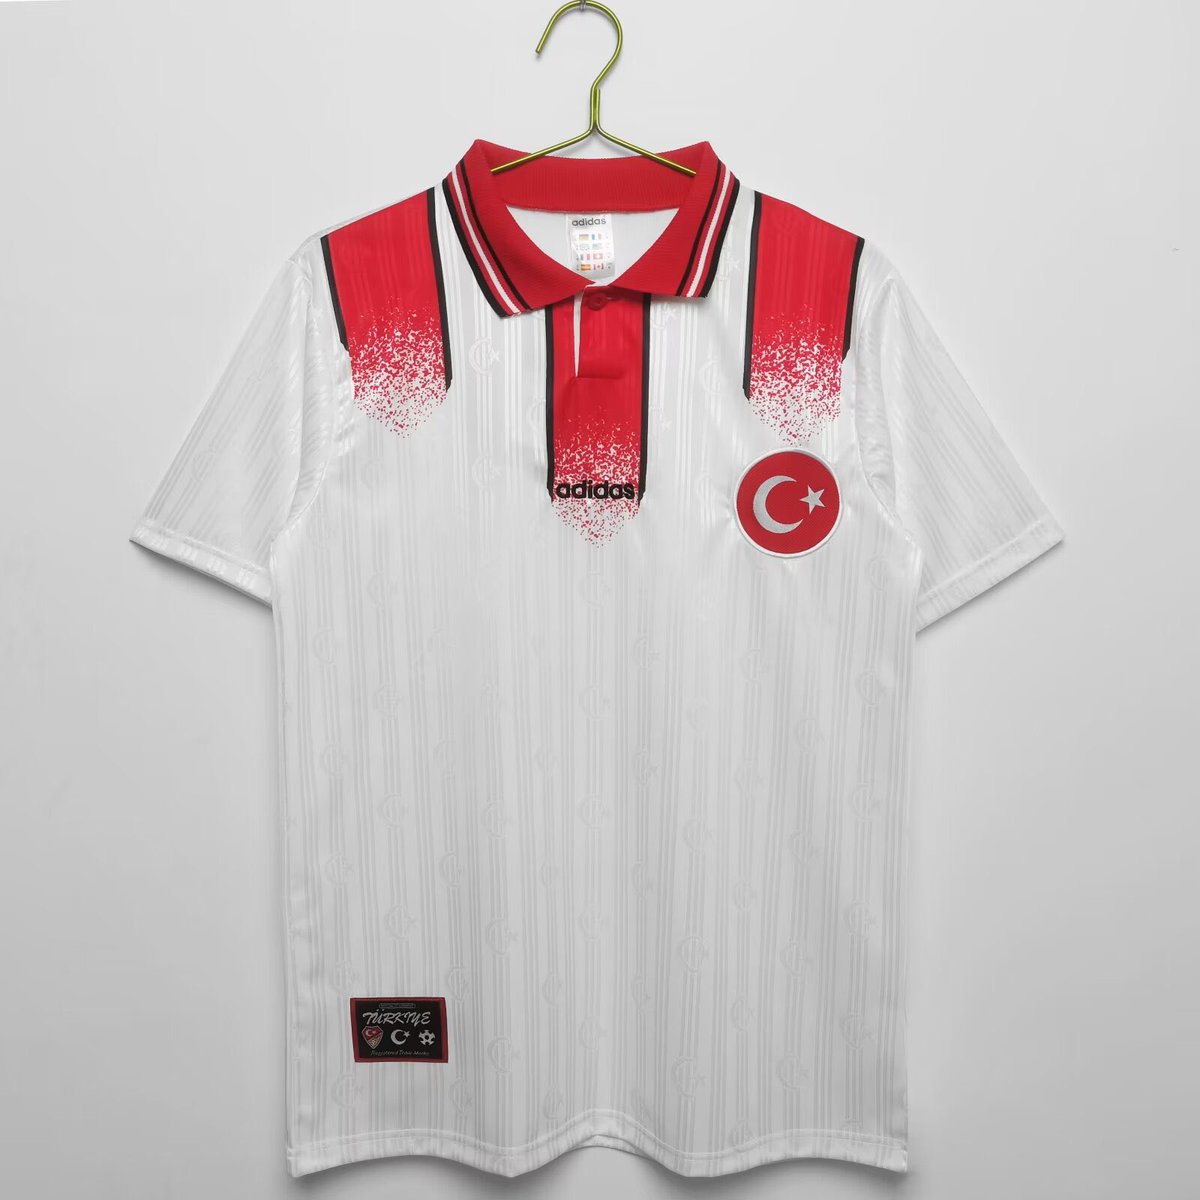 Disponible las camisetas retro de la selección turca